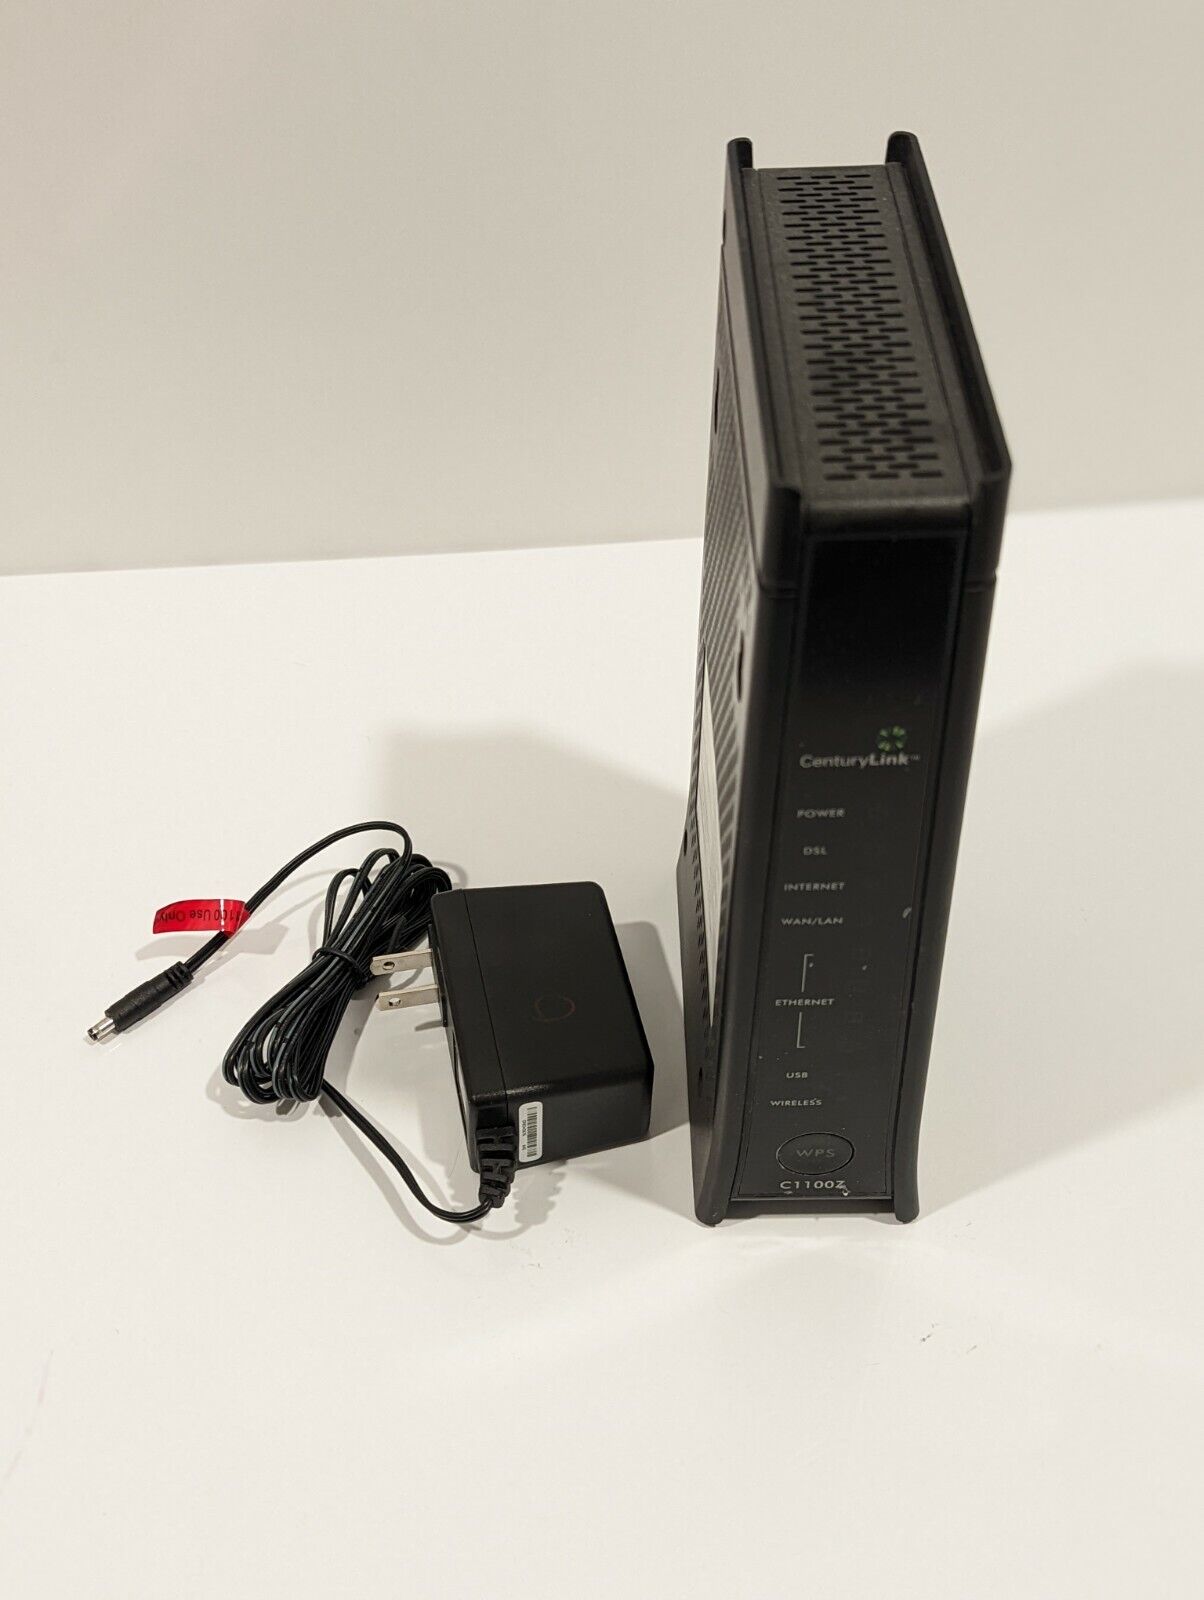 CenturyLink C1100Z ZyXel Wireless WiFi Modem Router w/ Power Adapter